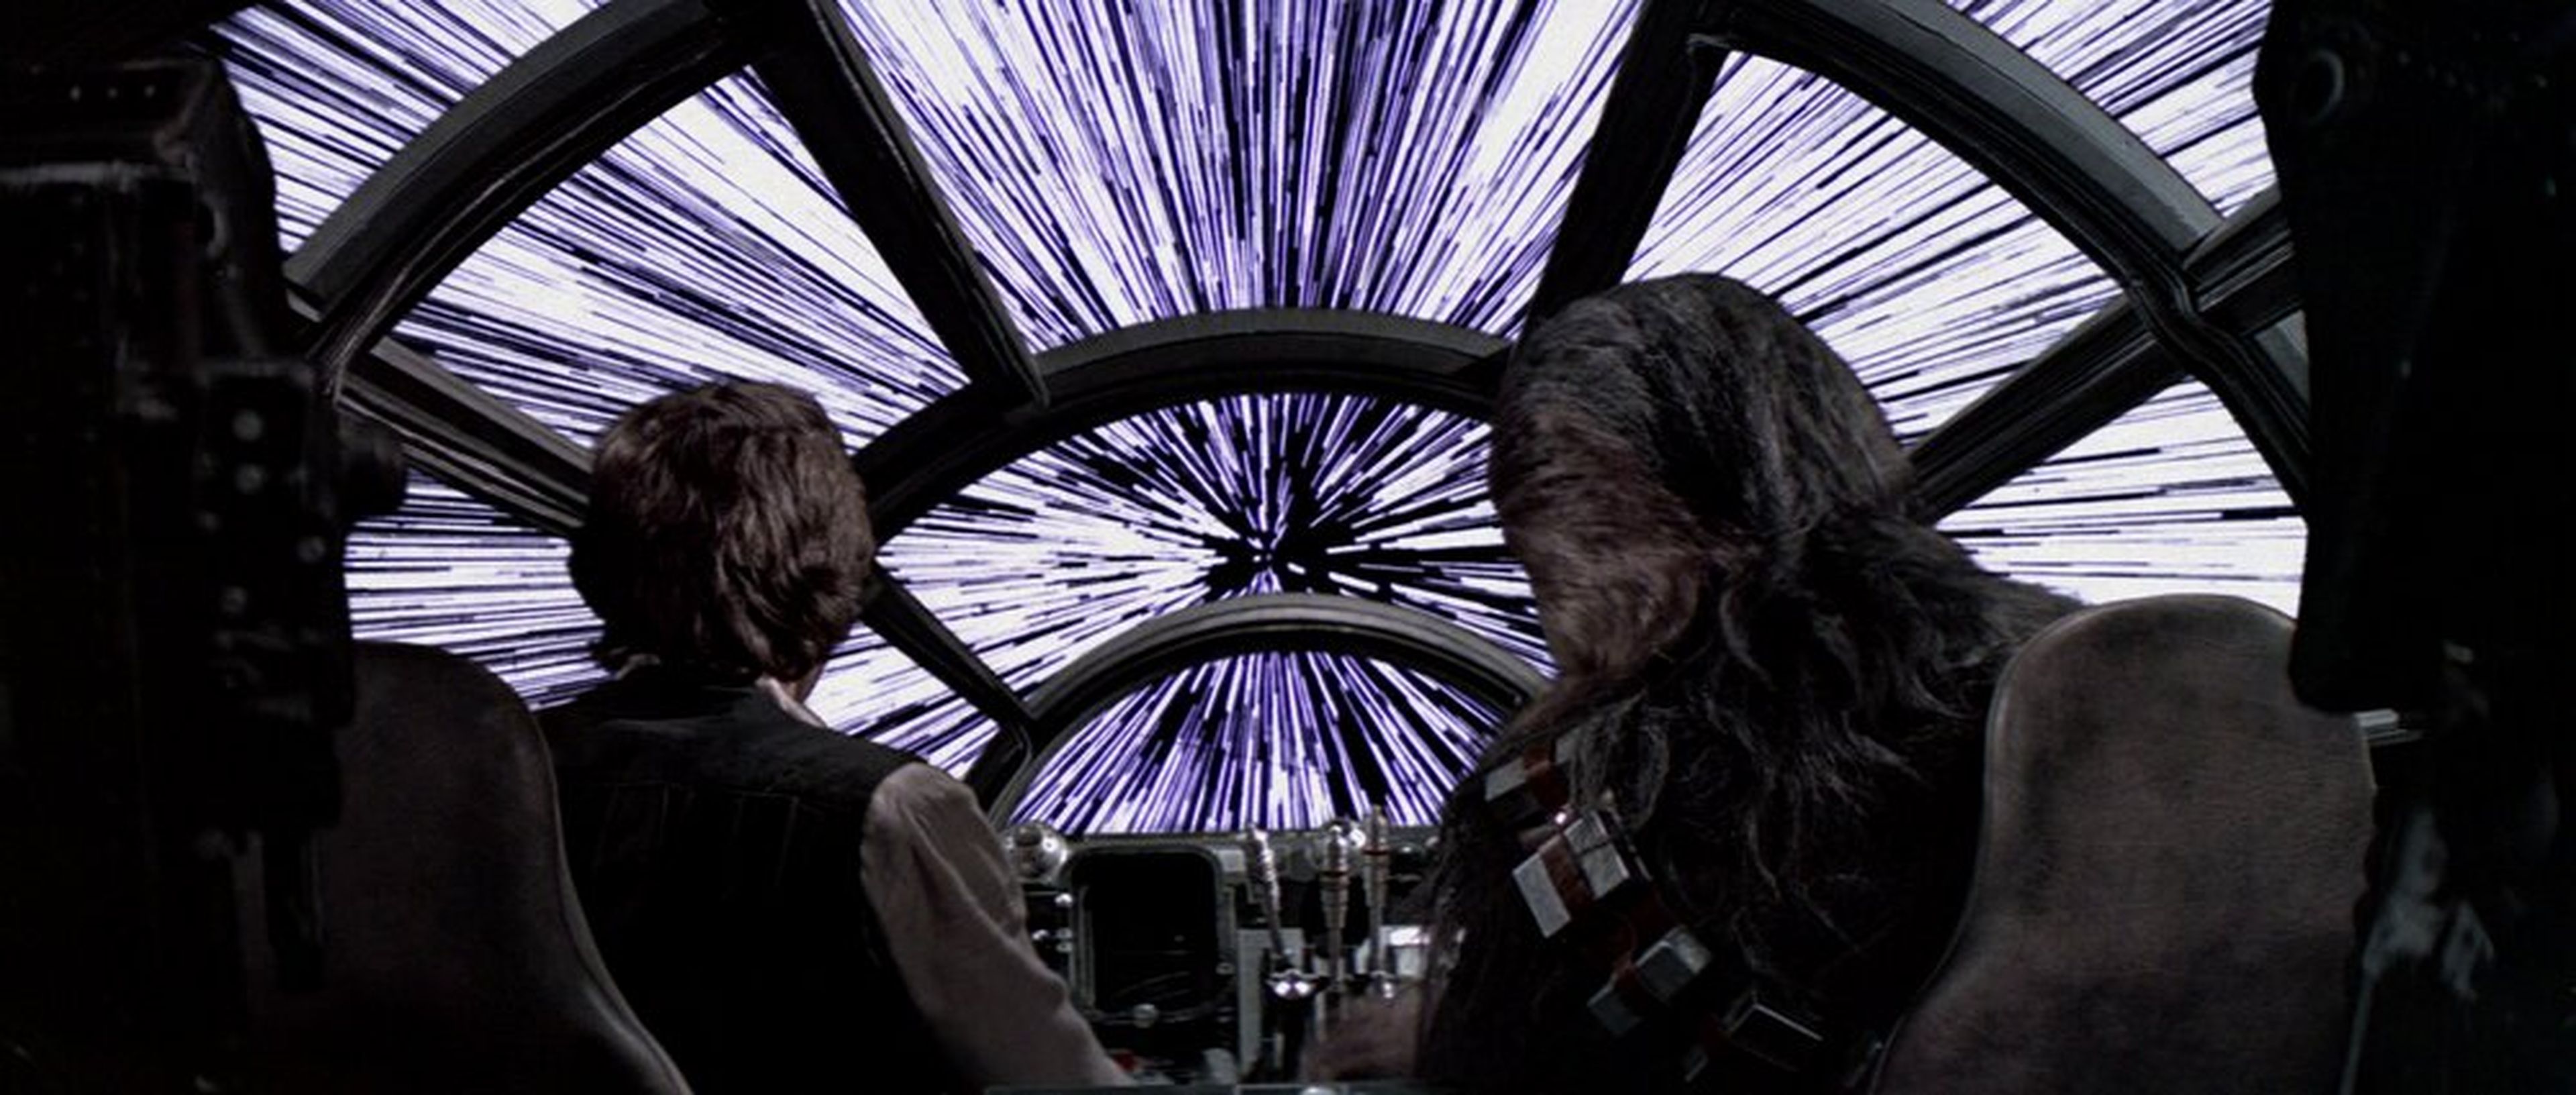 El Halcón Milenario de 'Star Wars' alcanza la velocidad de la luz.